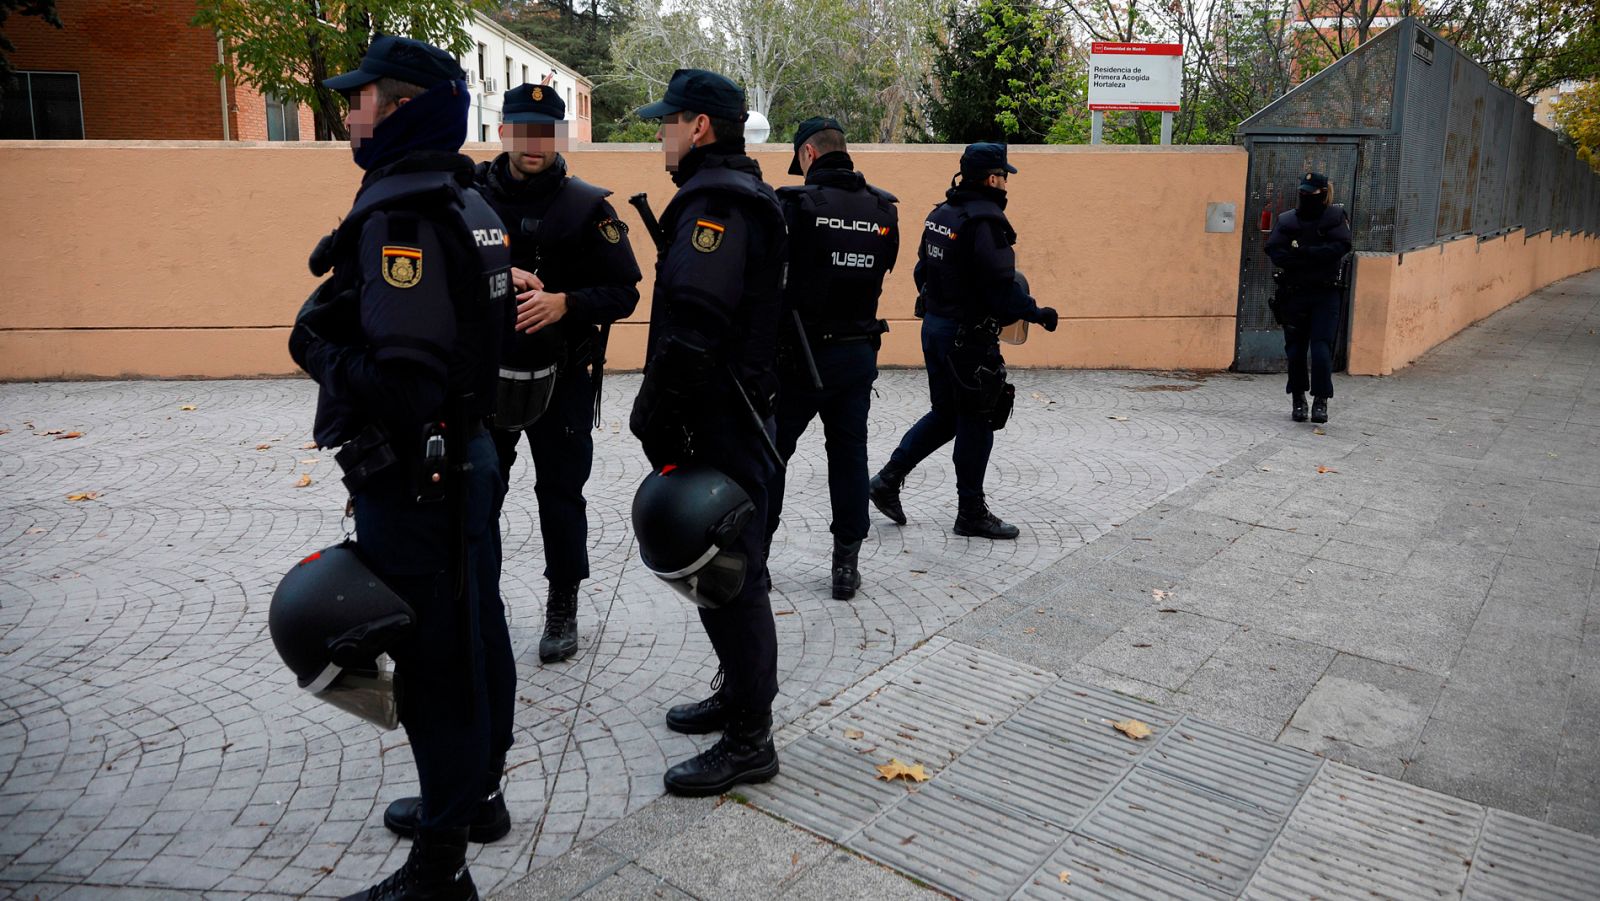 La Policía investiga la granada que ha aparecido en el centro de menores de Hortaleza y algunos partidos culpan a vox